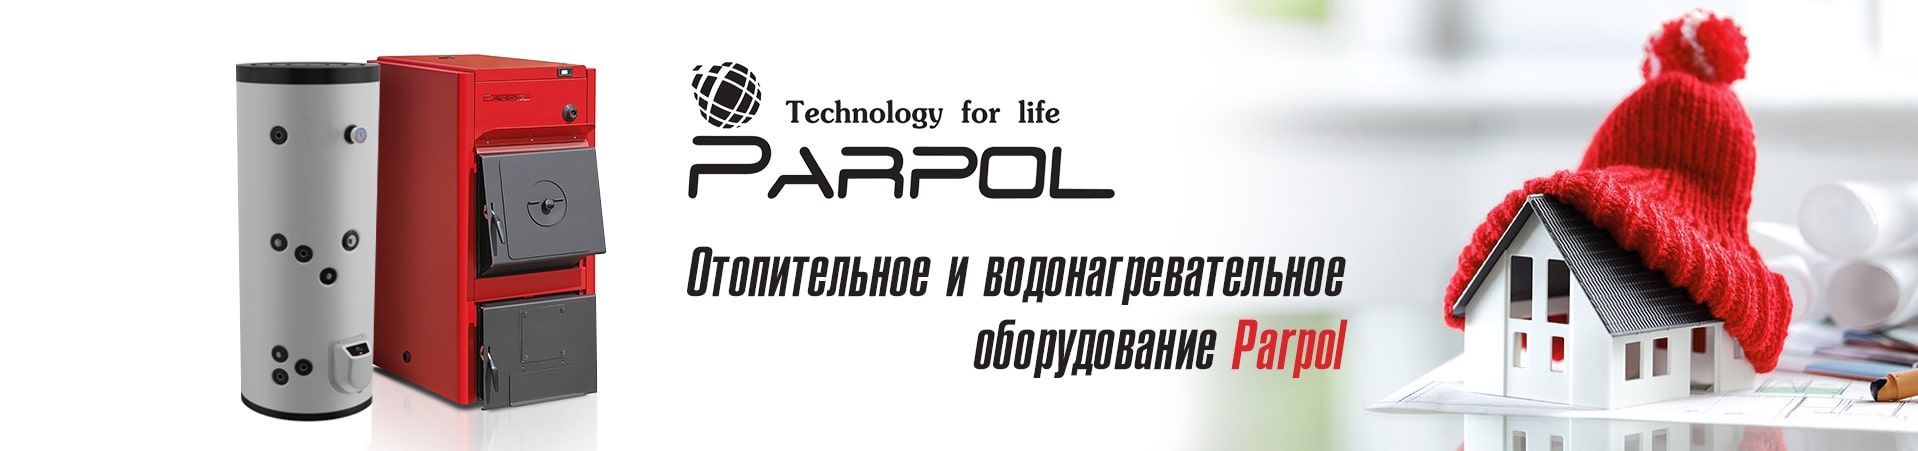 Расширение ассортимента! Отопительное и водонагревательное оборудование Parpol